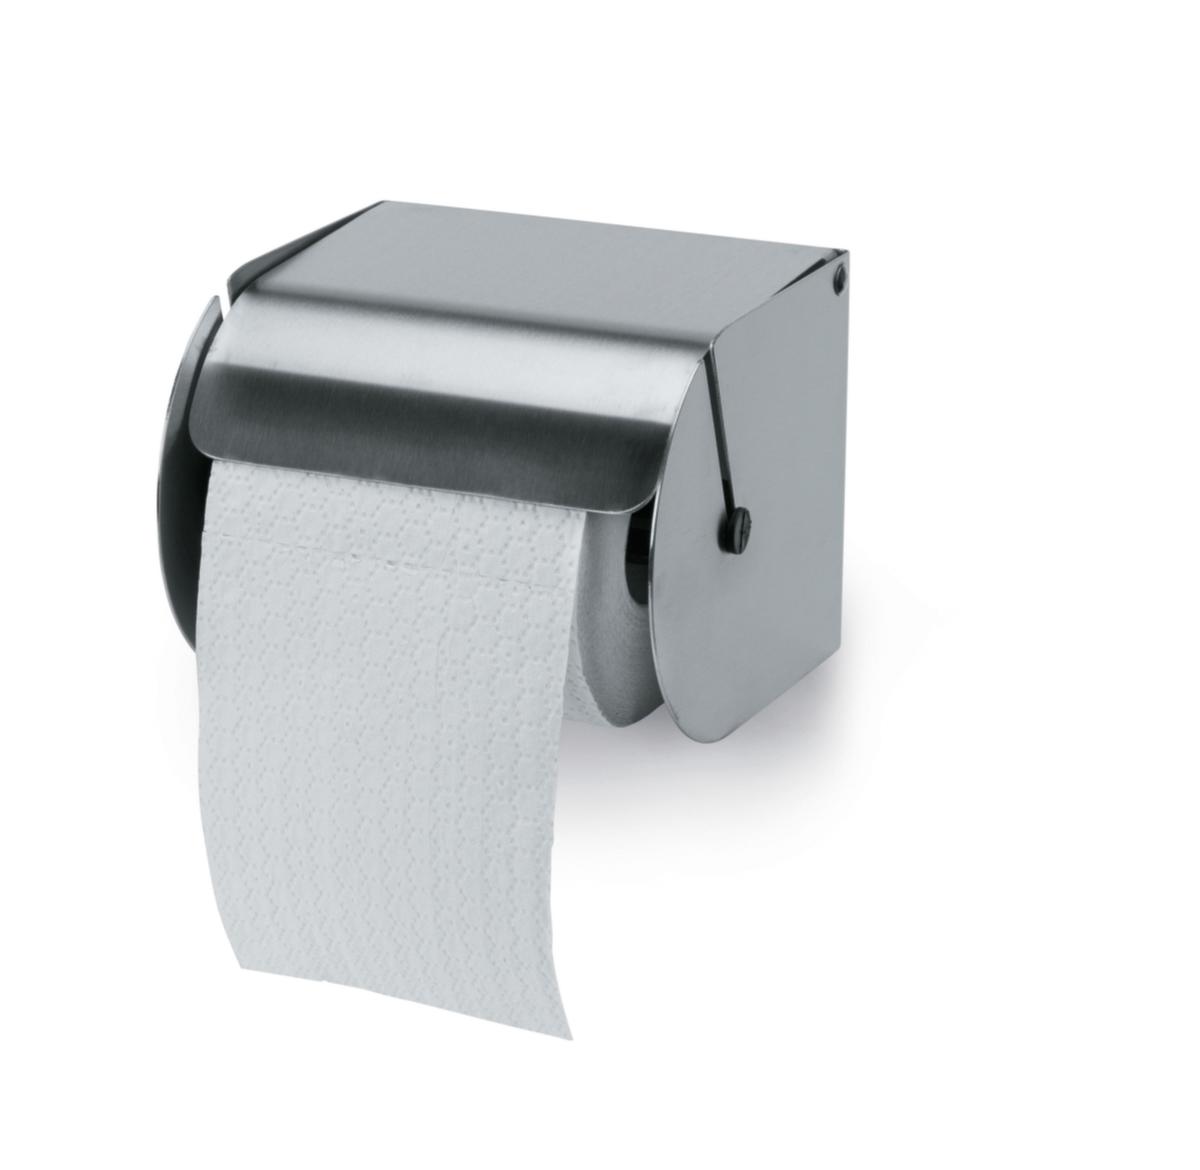 Toilettenpapierspender für Haushaltsrollen Standard 1 ZOOM